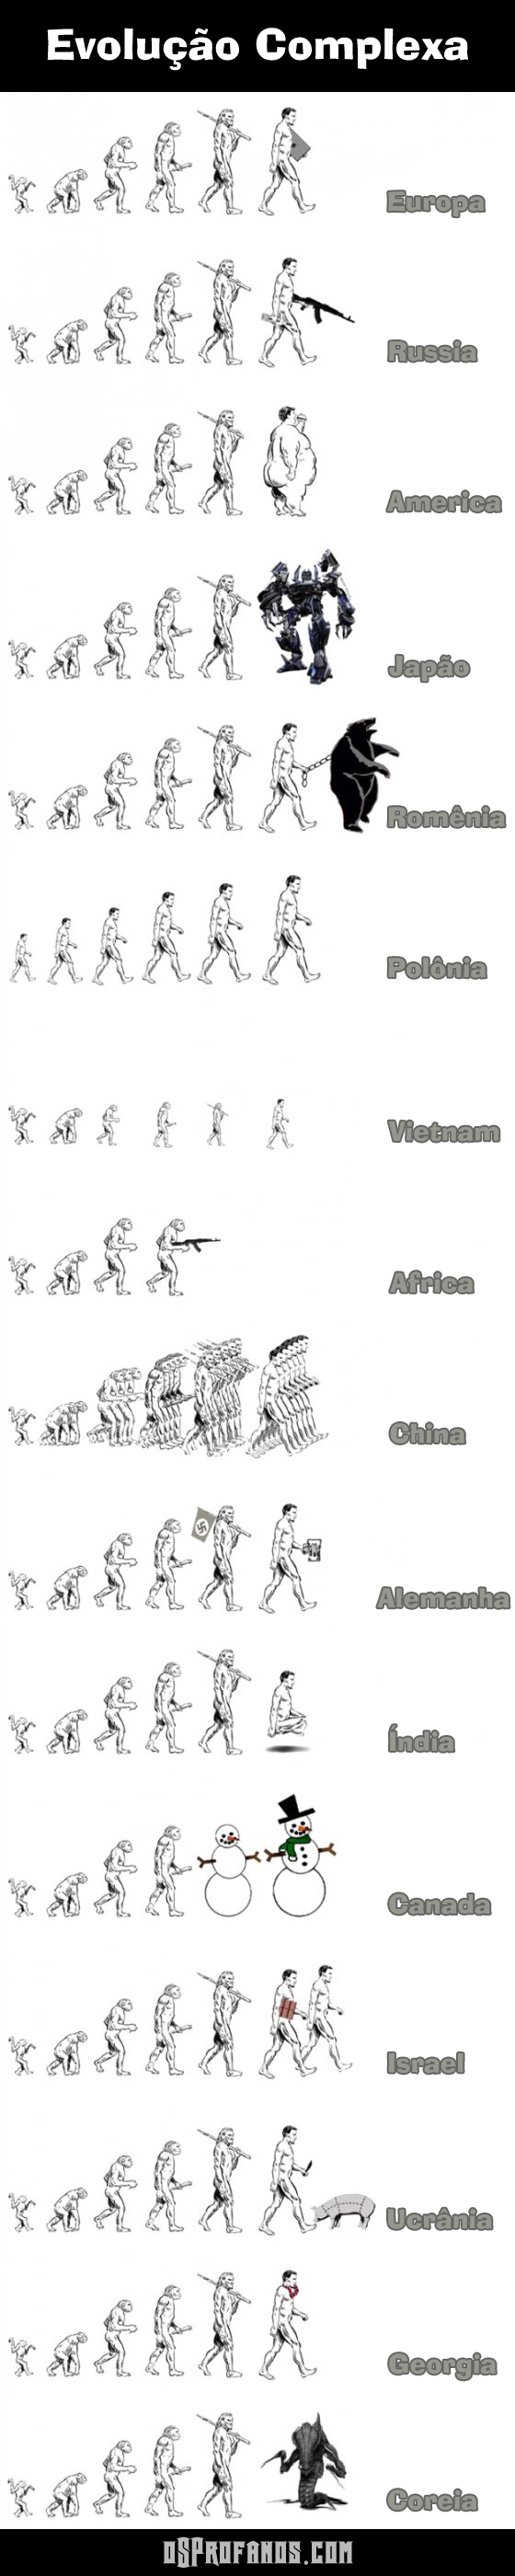 Evolução complexa